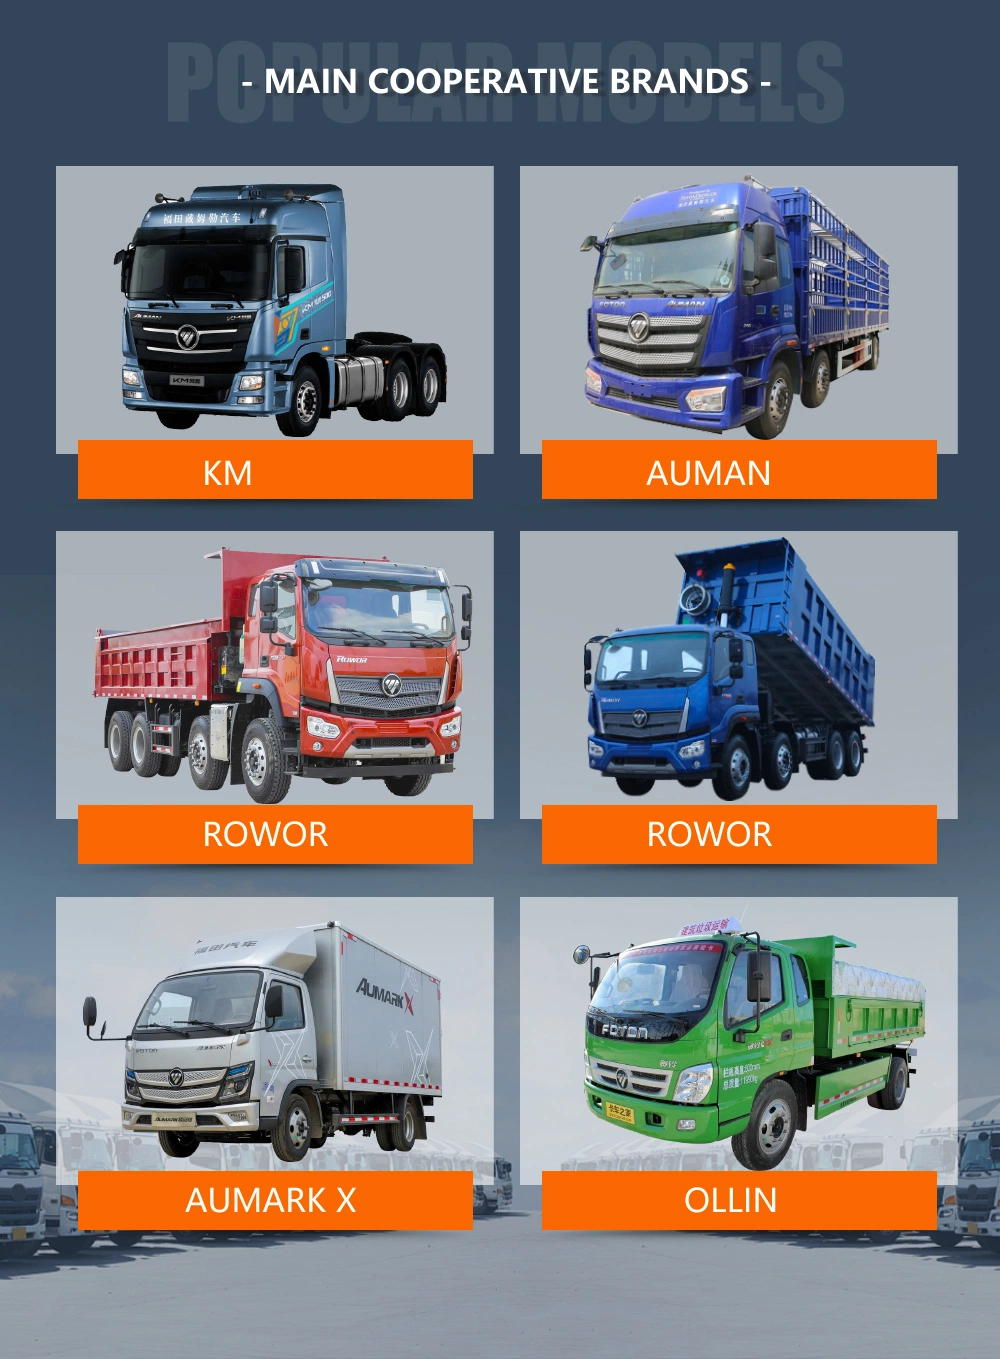 Weichai FAW Shacman/Beiben/Benz/Sitrak /Steyr/ Hohan/Shacman/Foton/Komatsu /Volvo/Sinotruck HOWO Trailer Tractor Mining Dump Truck Spare Parts